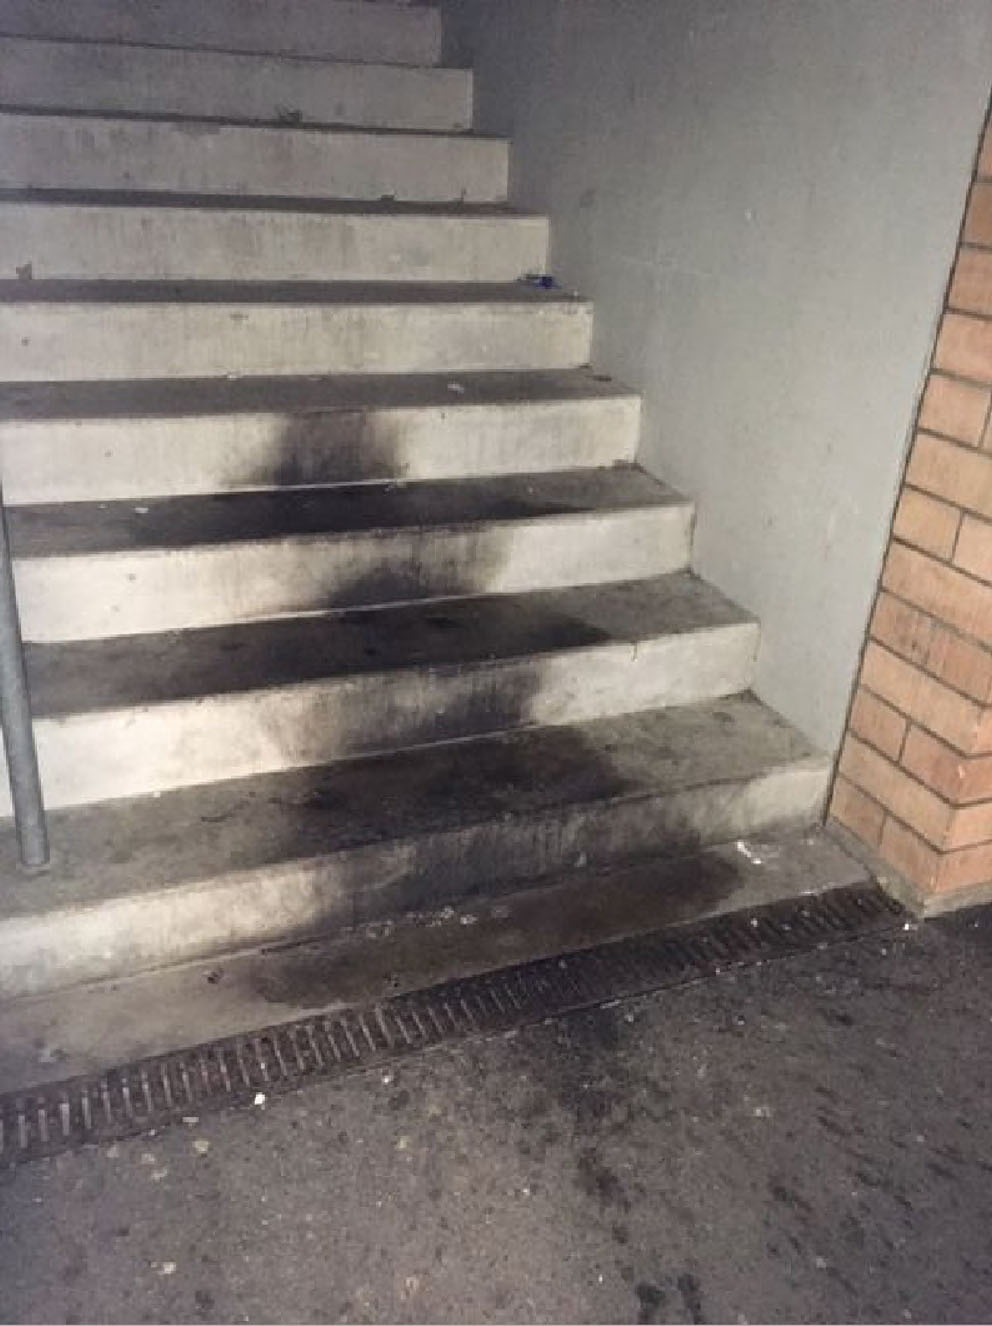 Un liquide inflammable a été déversé sur les marches situées à l’extérieur du bâtiment.